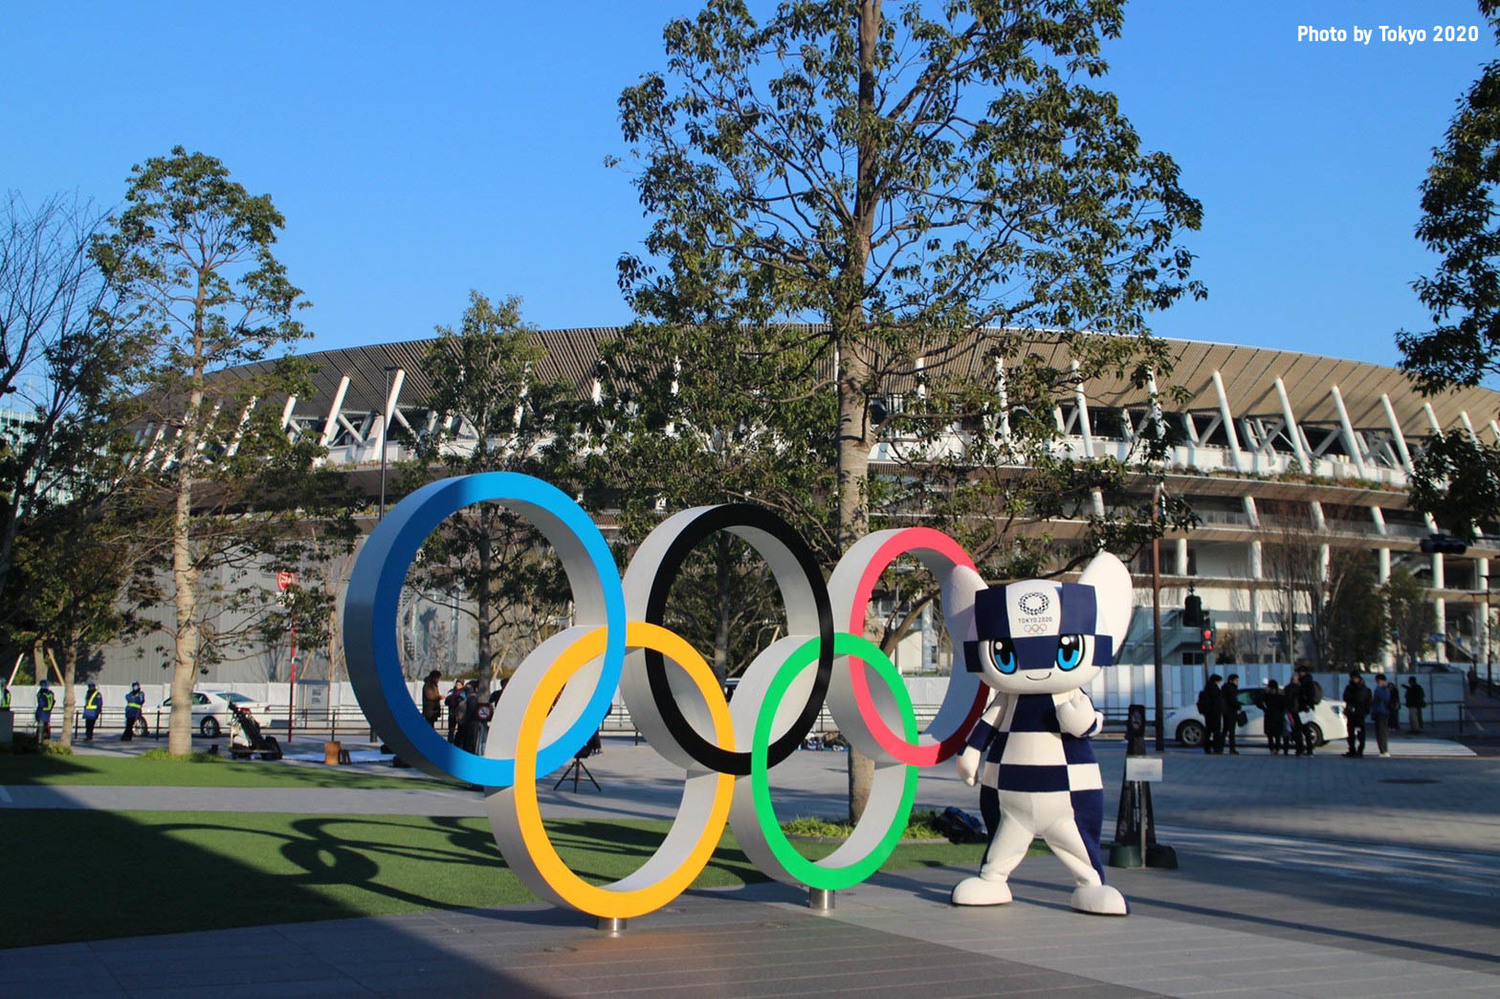 東京奧運舉辦與否 28國民調出爐「韓、日最反對」